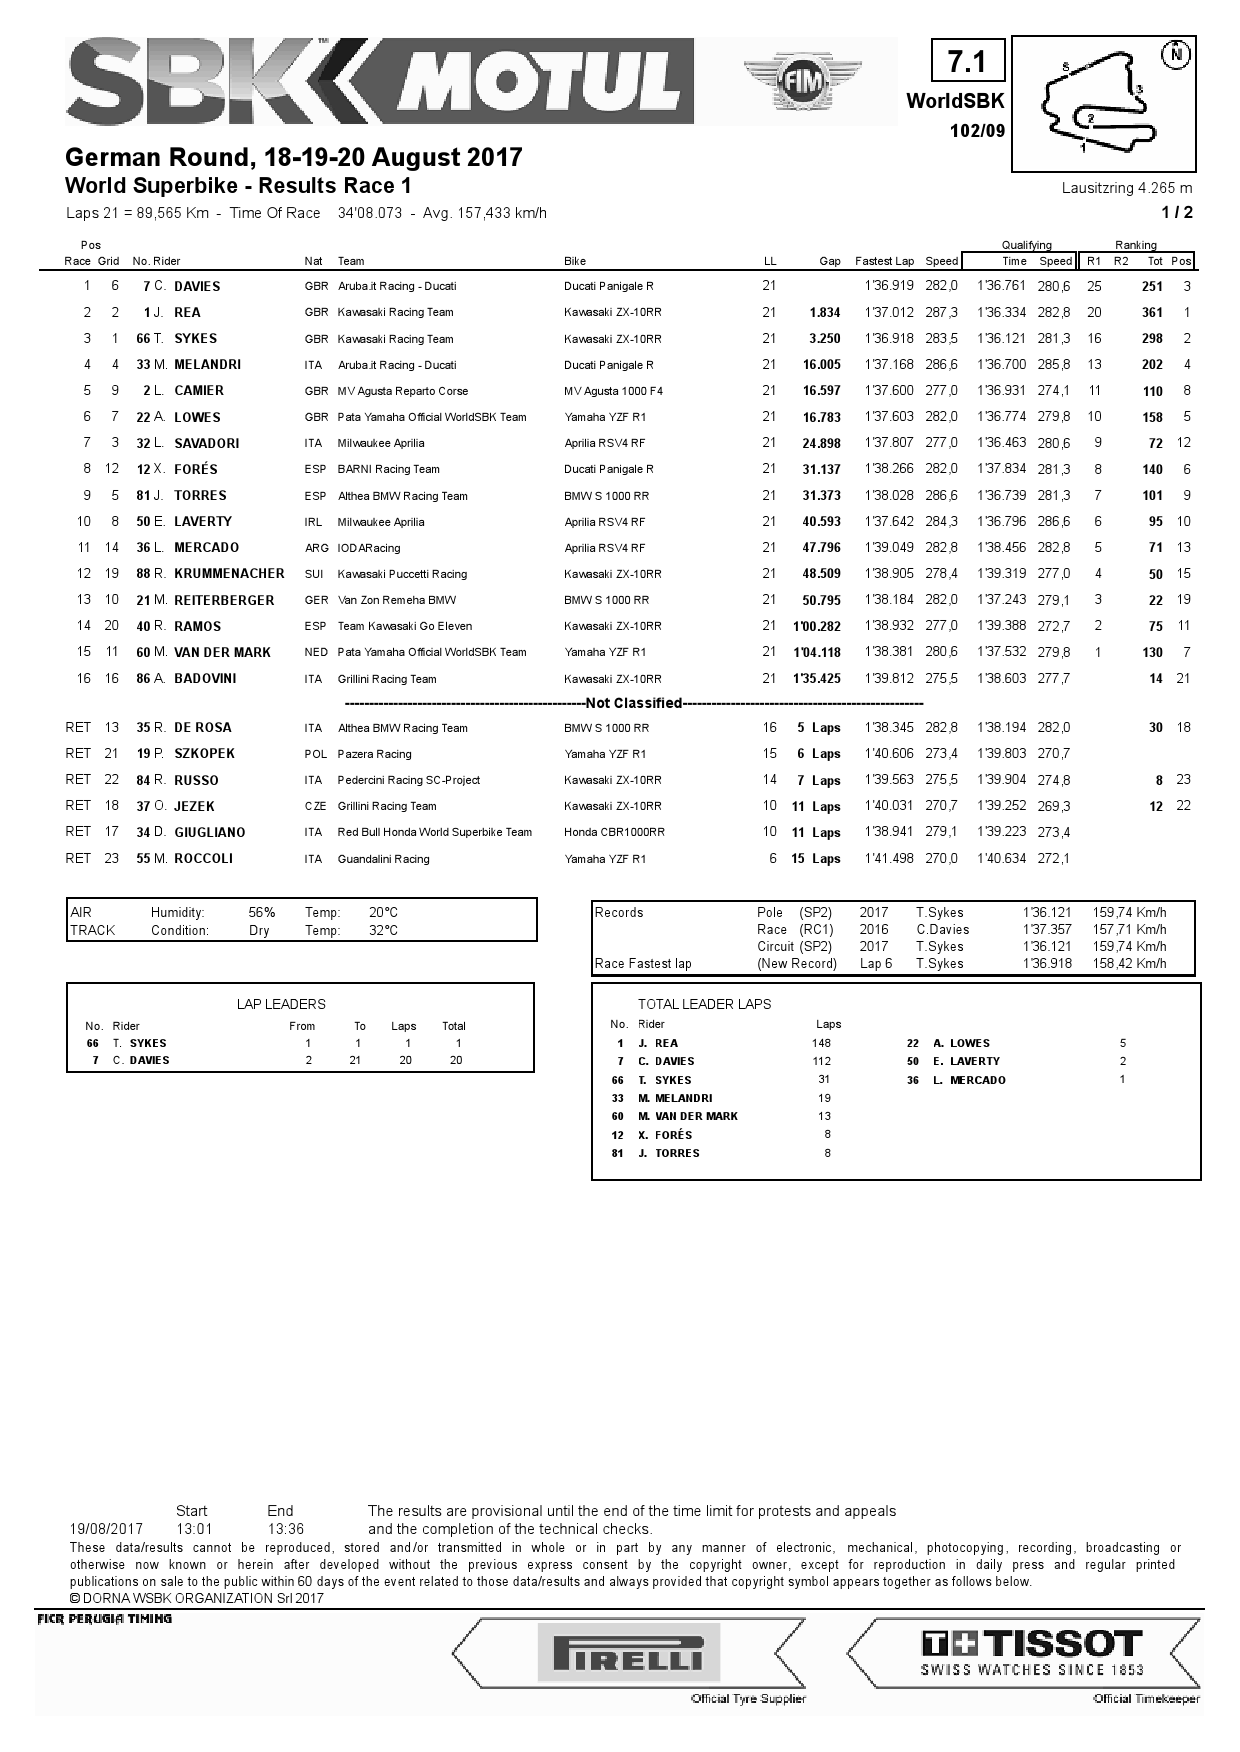 Результаты 1-й гонки World Superbike в Lausitzring, 19.08.2017